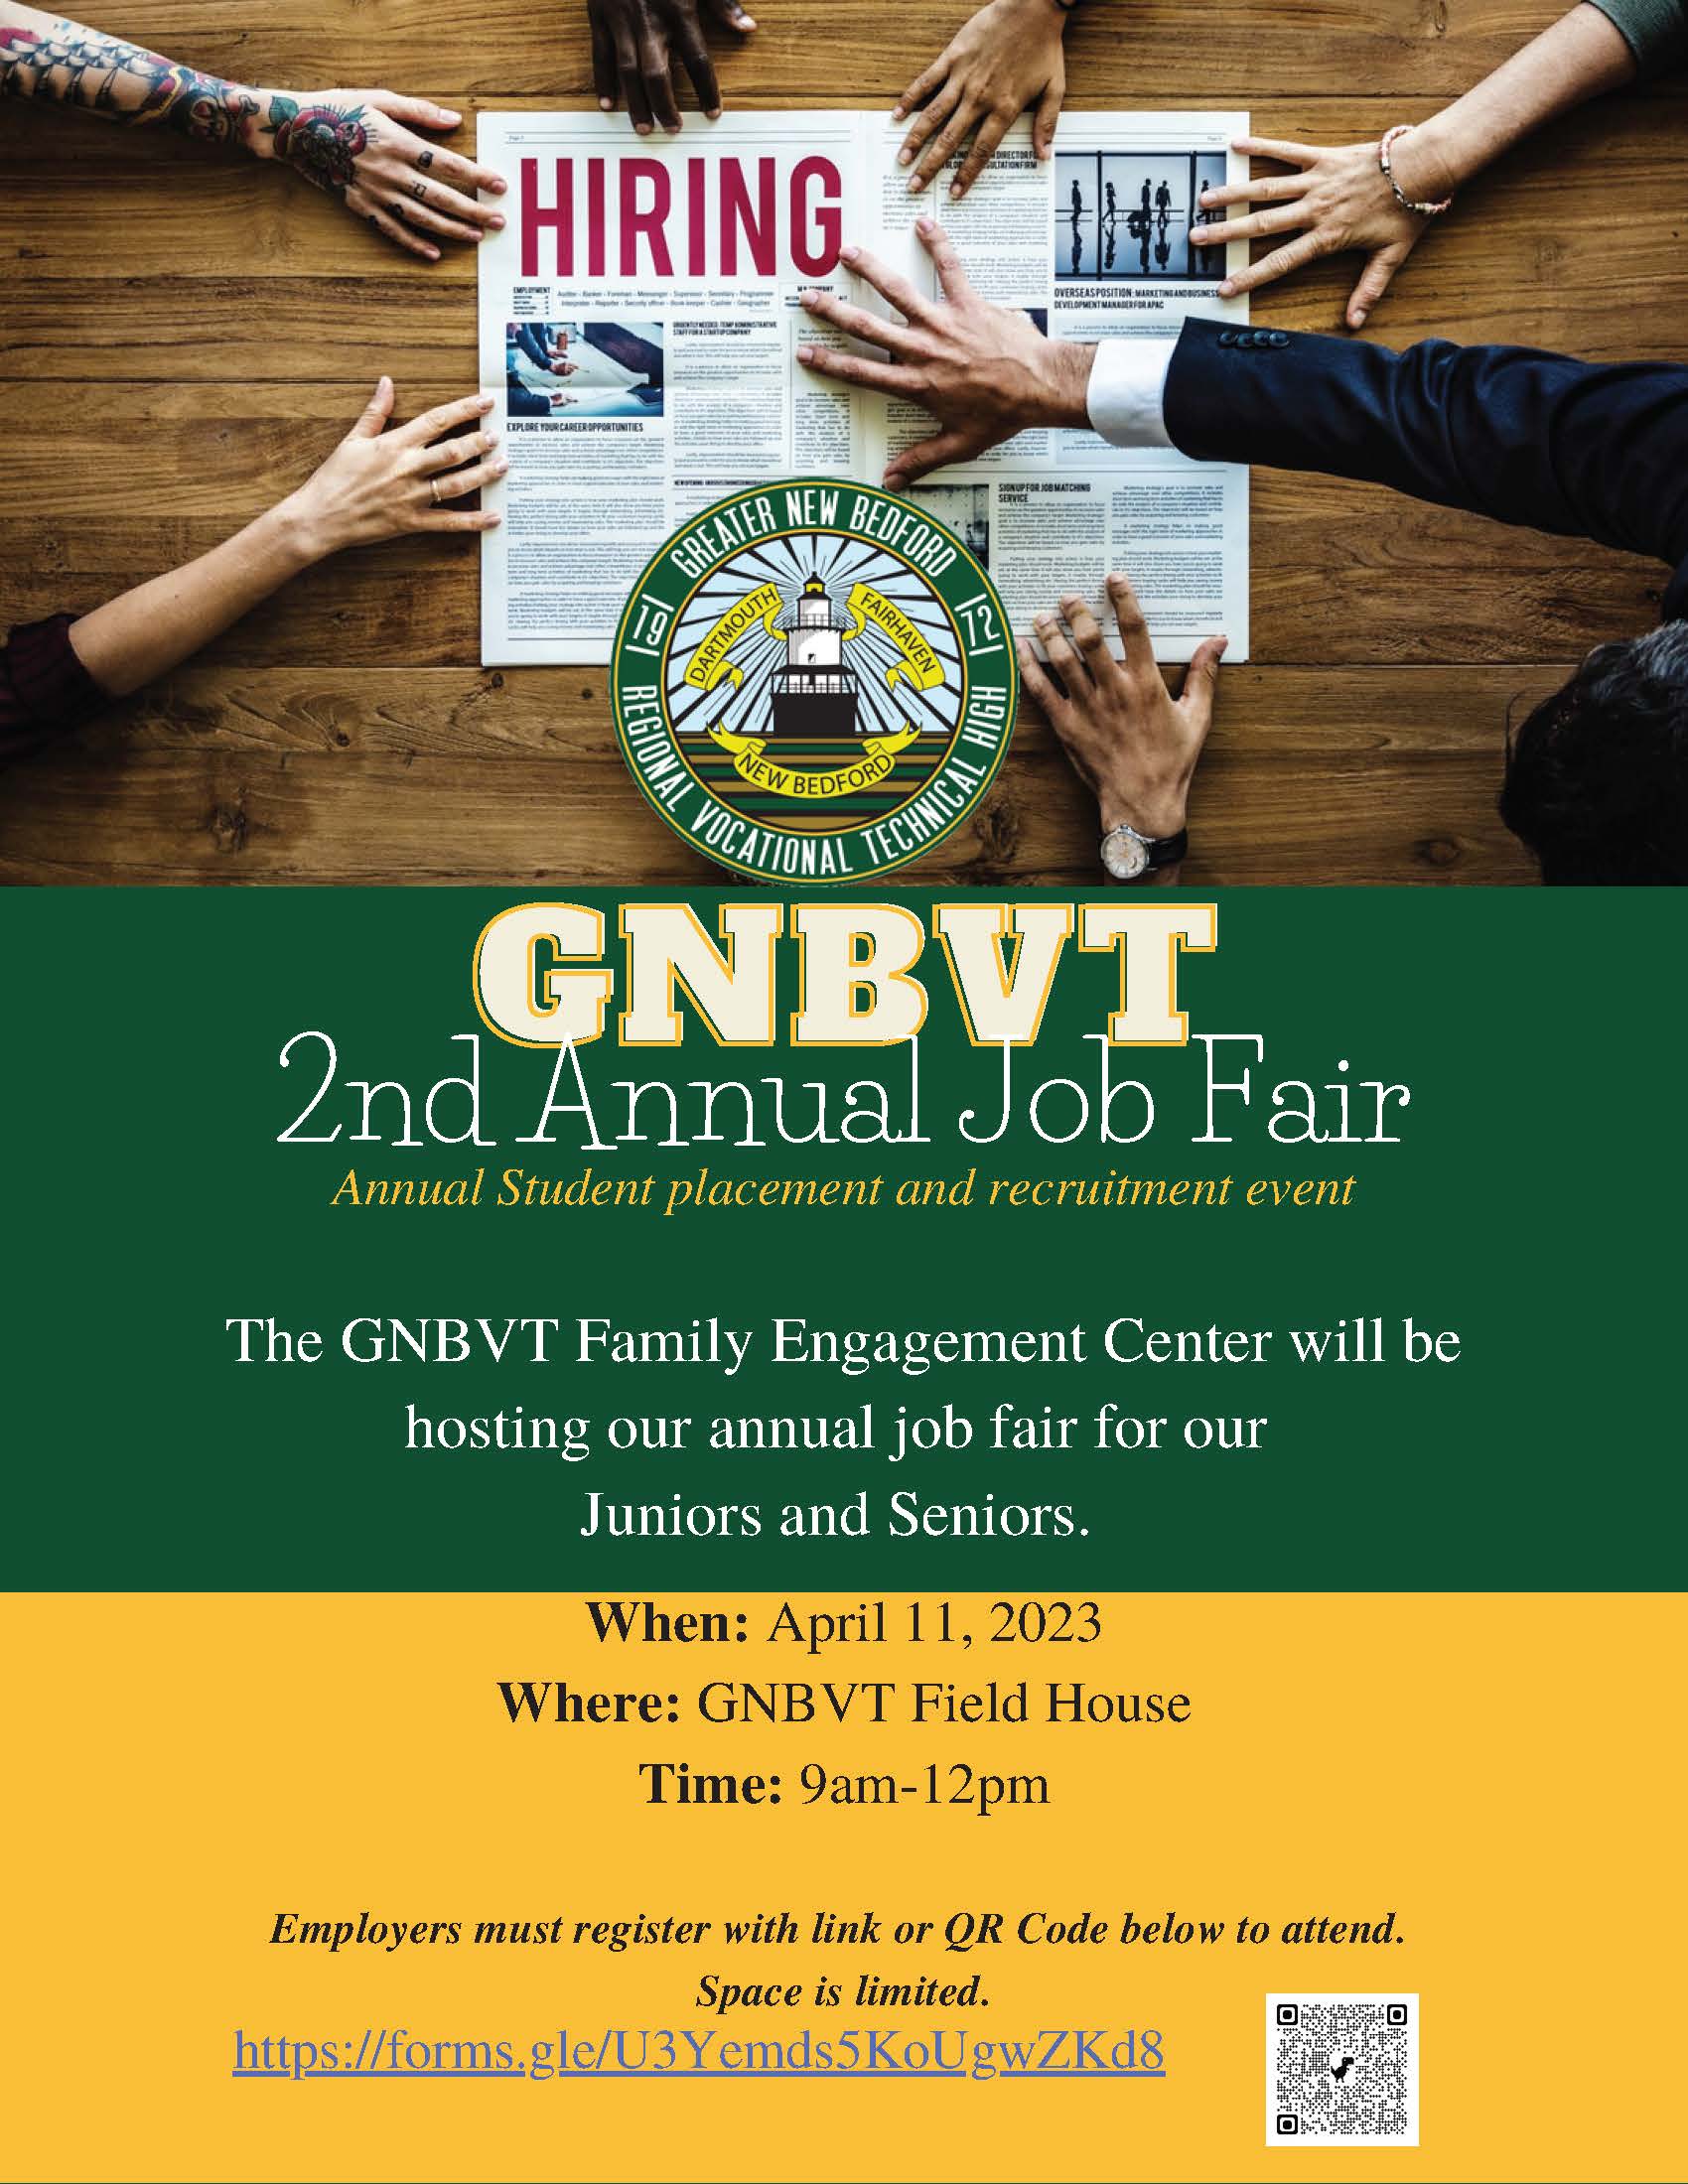 GNBVT 2nd Annual Job Fair